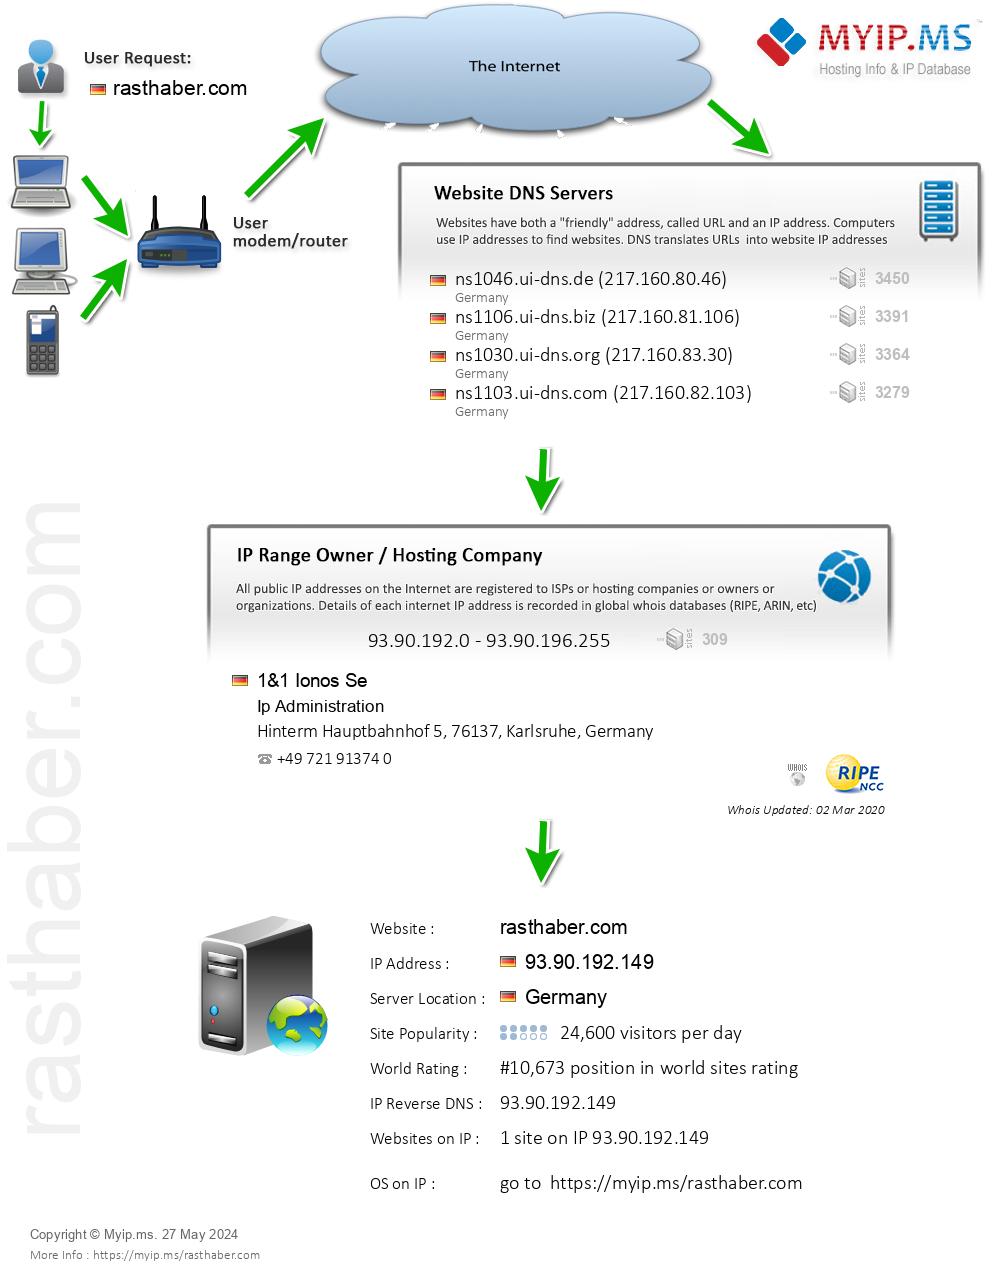 Rasthaber.com - Website Hosting Visual IP Diagram